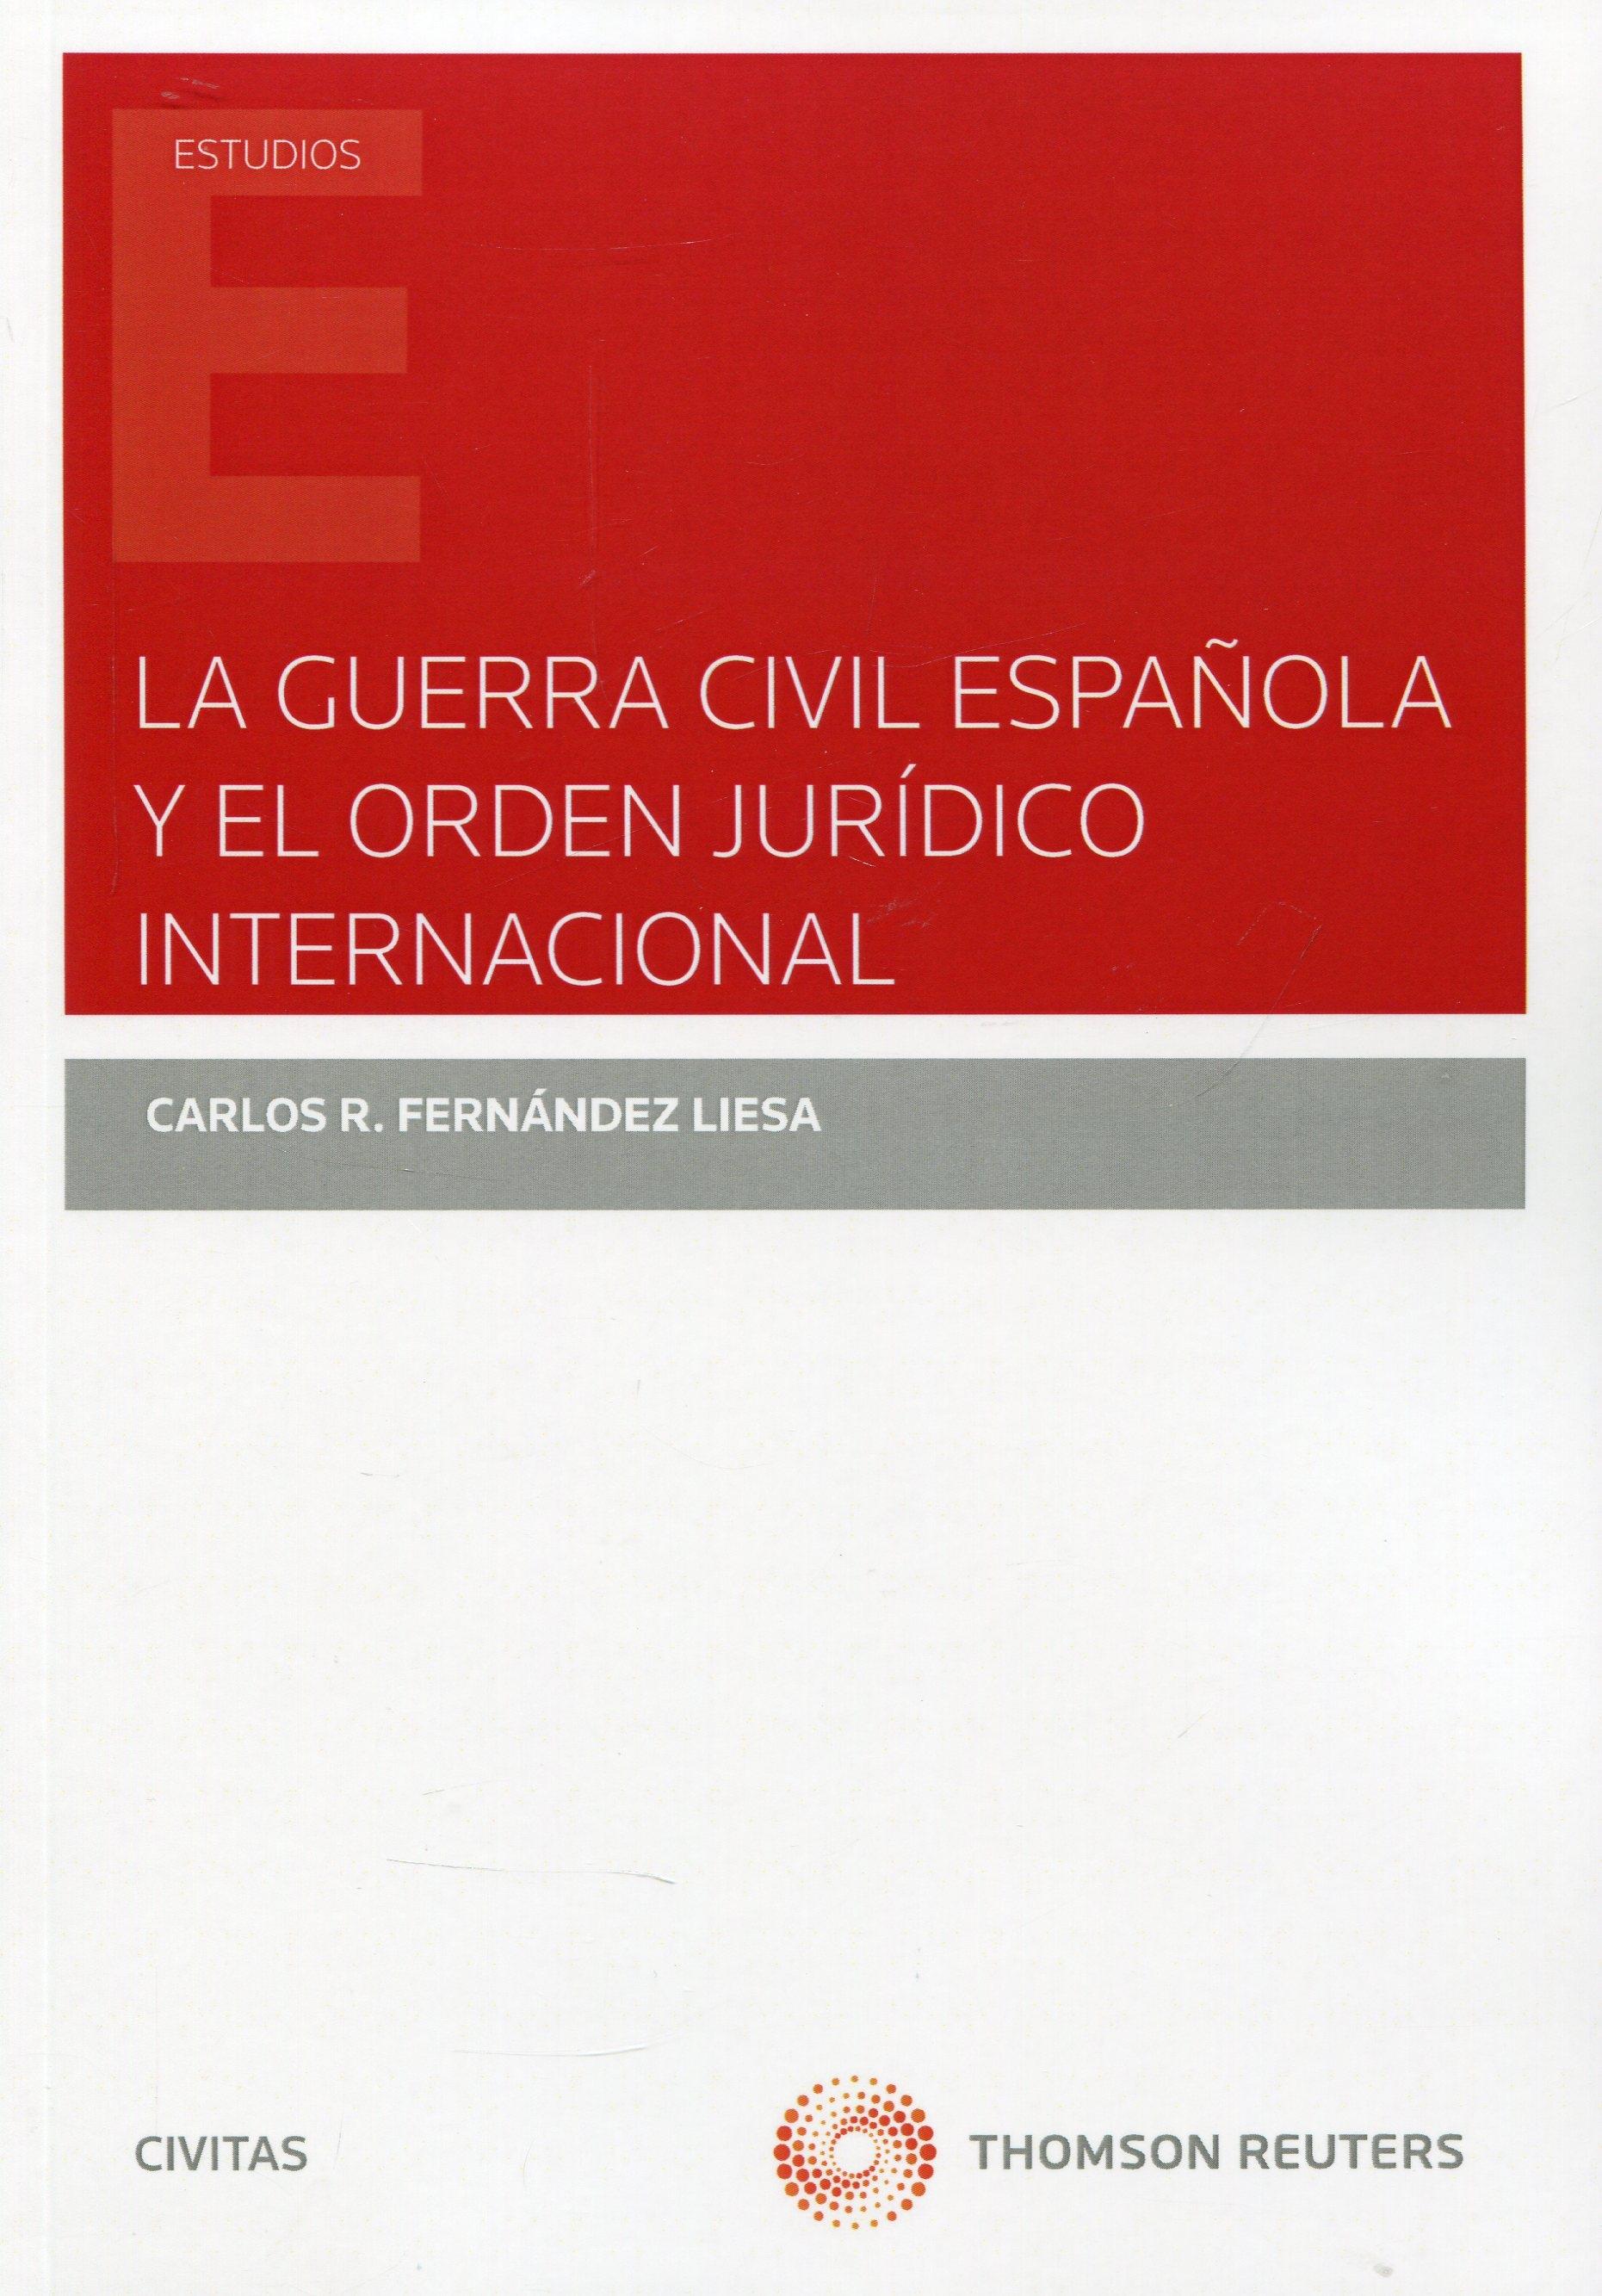 La Guerra Civil Española y el orden jurídico internacional